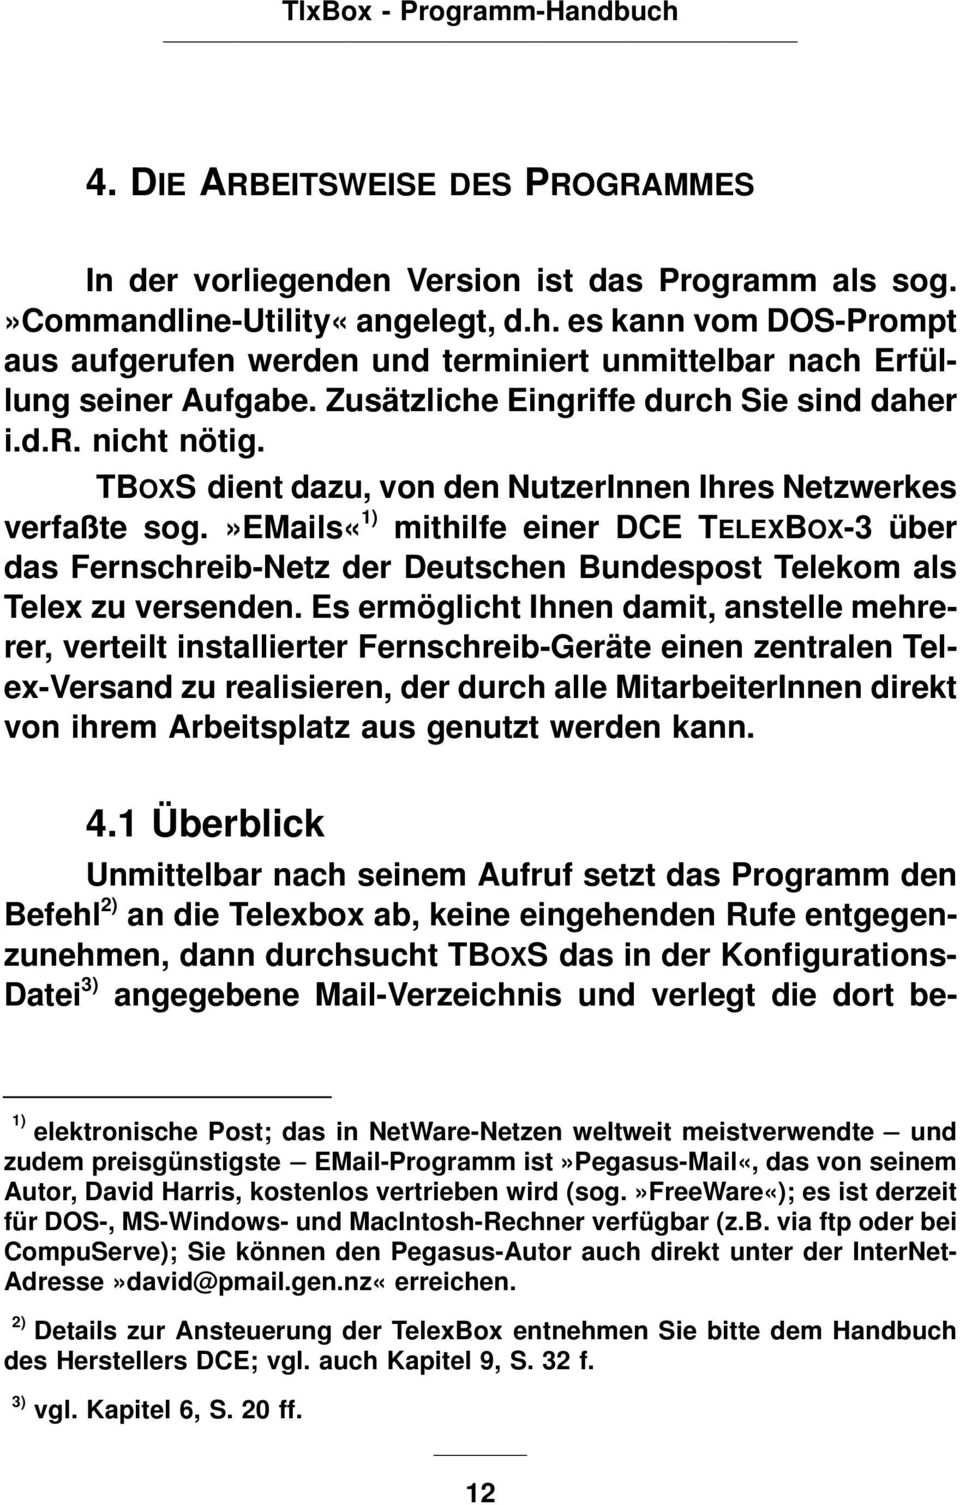 TBOXS dient dazu, von den NutzerInnen Ihres Netzwerkes verfaßte sog.»emails«1) mithilfe einer DCE TELEXBOX-3 über das Fernschreib-Netz der Deutschen Bundespost Telekom als Telex zu versenden.